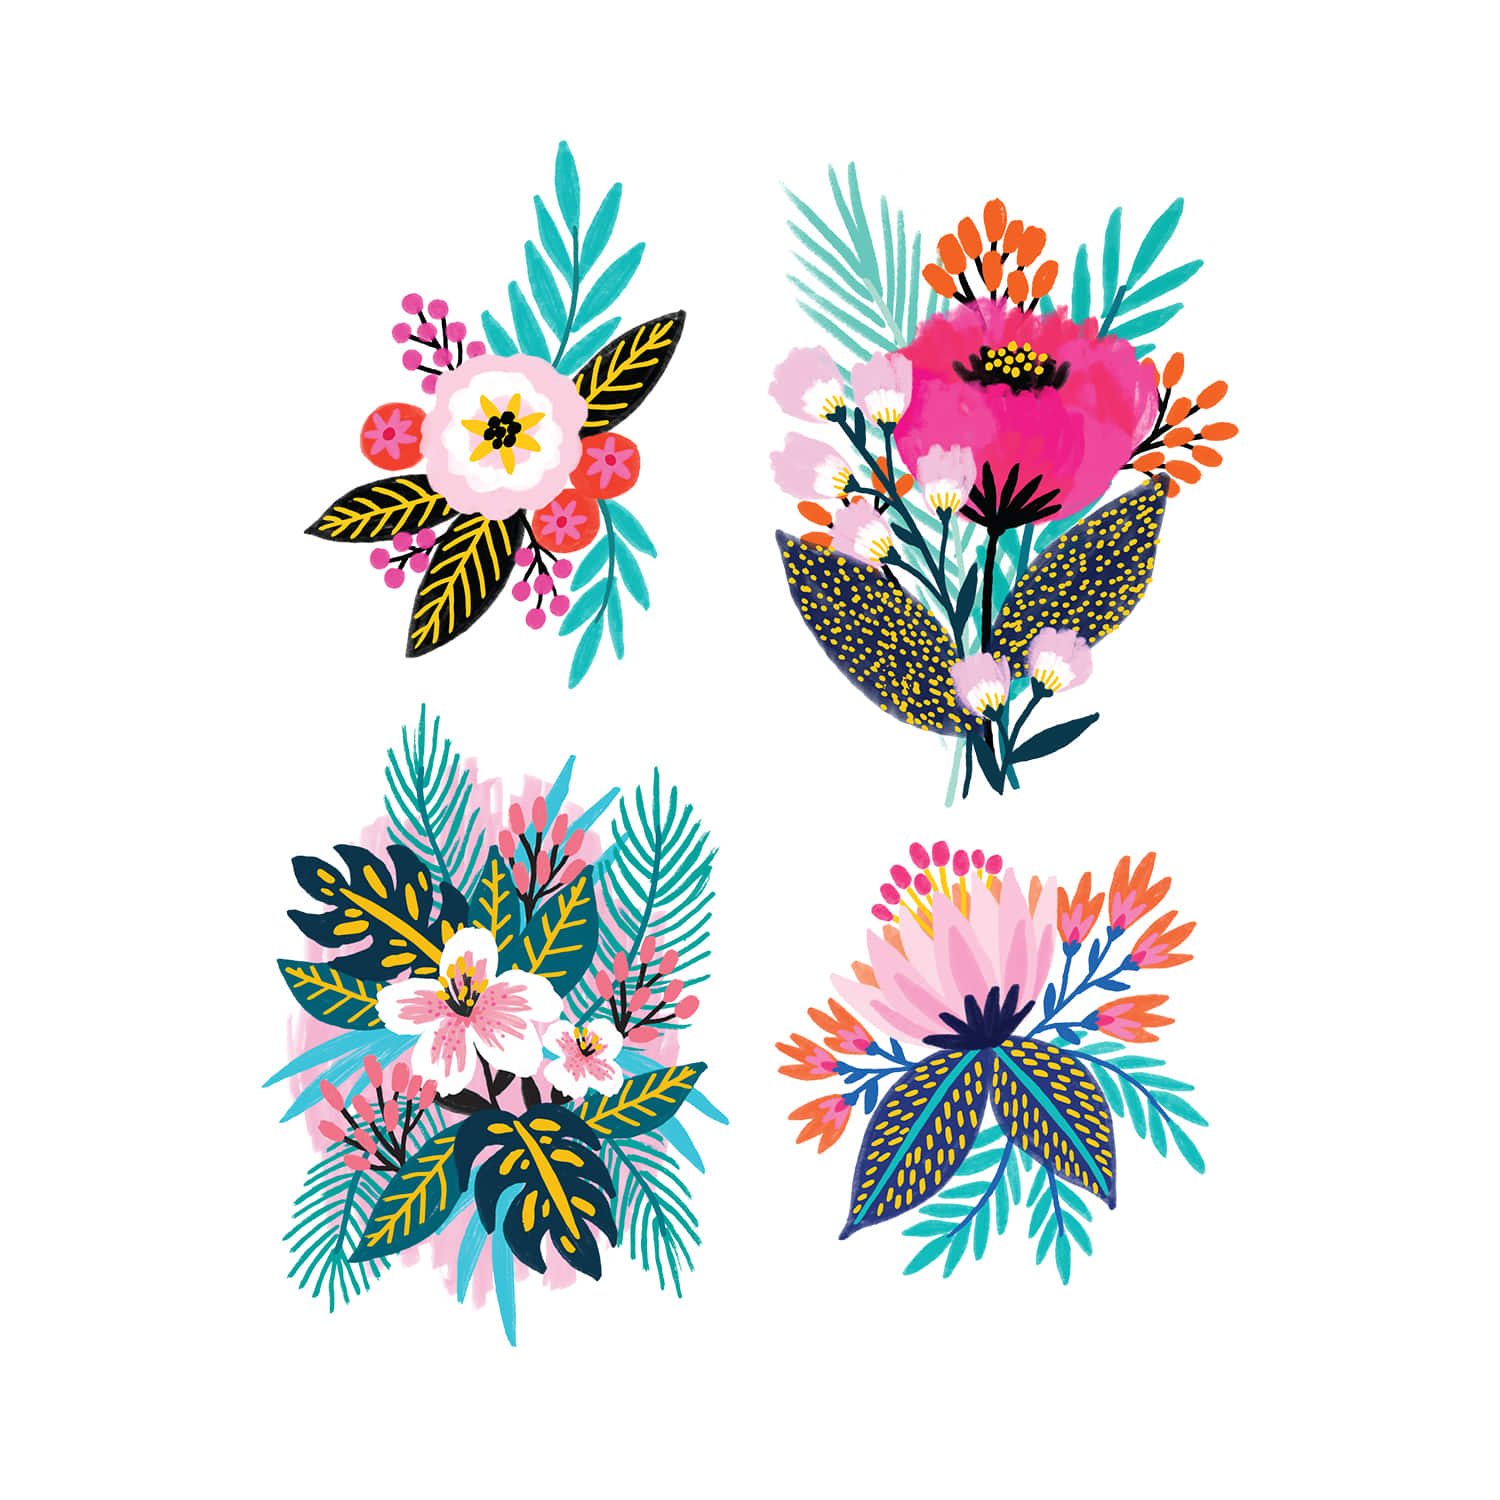 태틀리 Brilliant Blooms 타투스티커 세트 8매